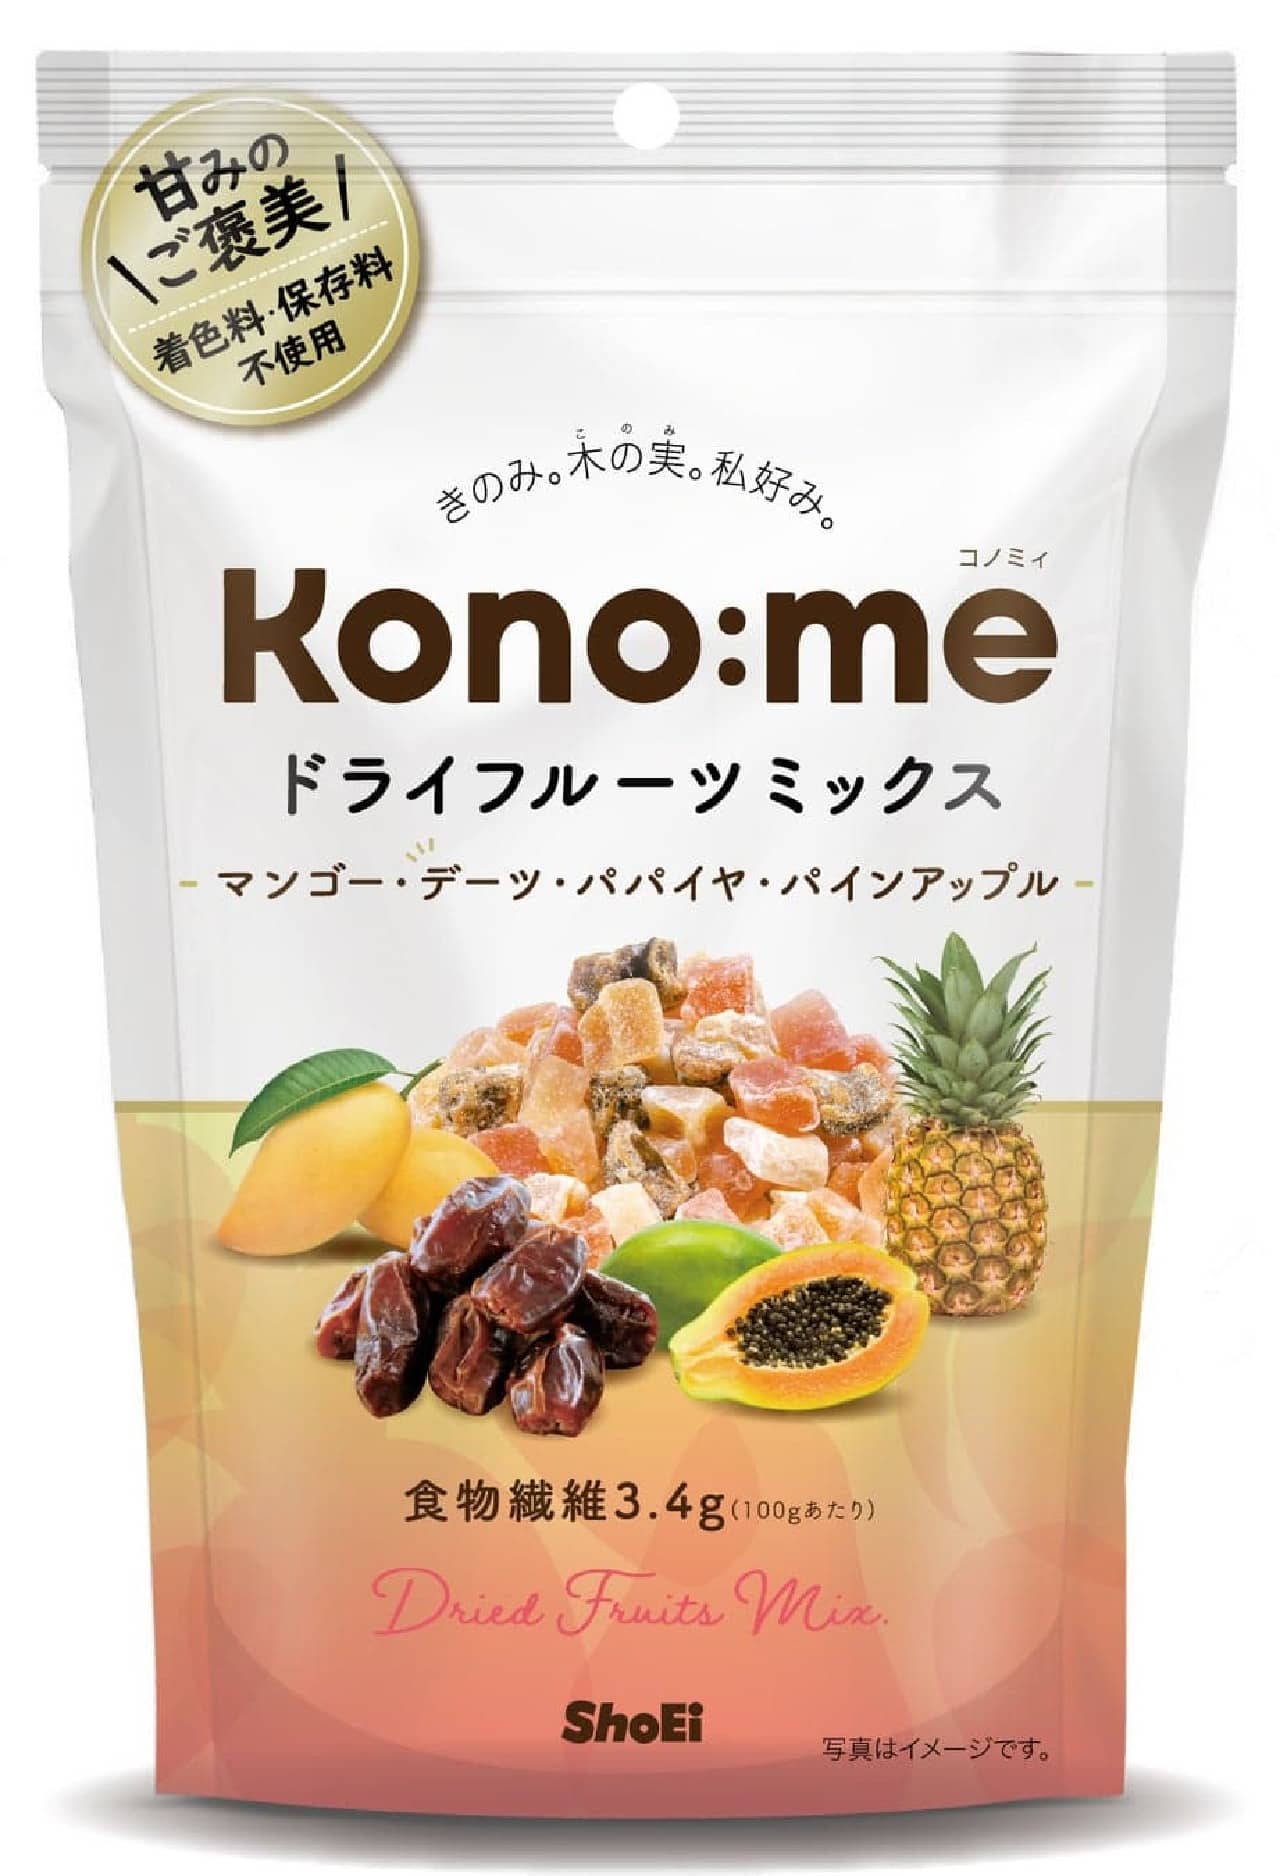 4月1日発売！着色料・保存料不使用の「Kono:meドライフルーツミックス」-健康志向にピッタリな4種の大粒フルーツを楽しめる新商品 画像1